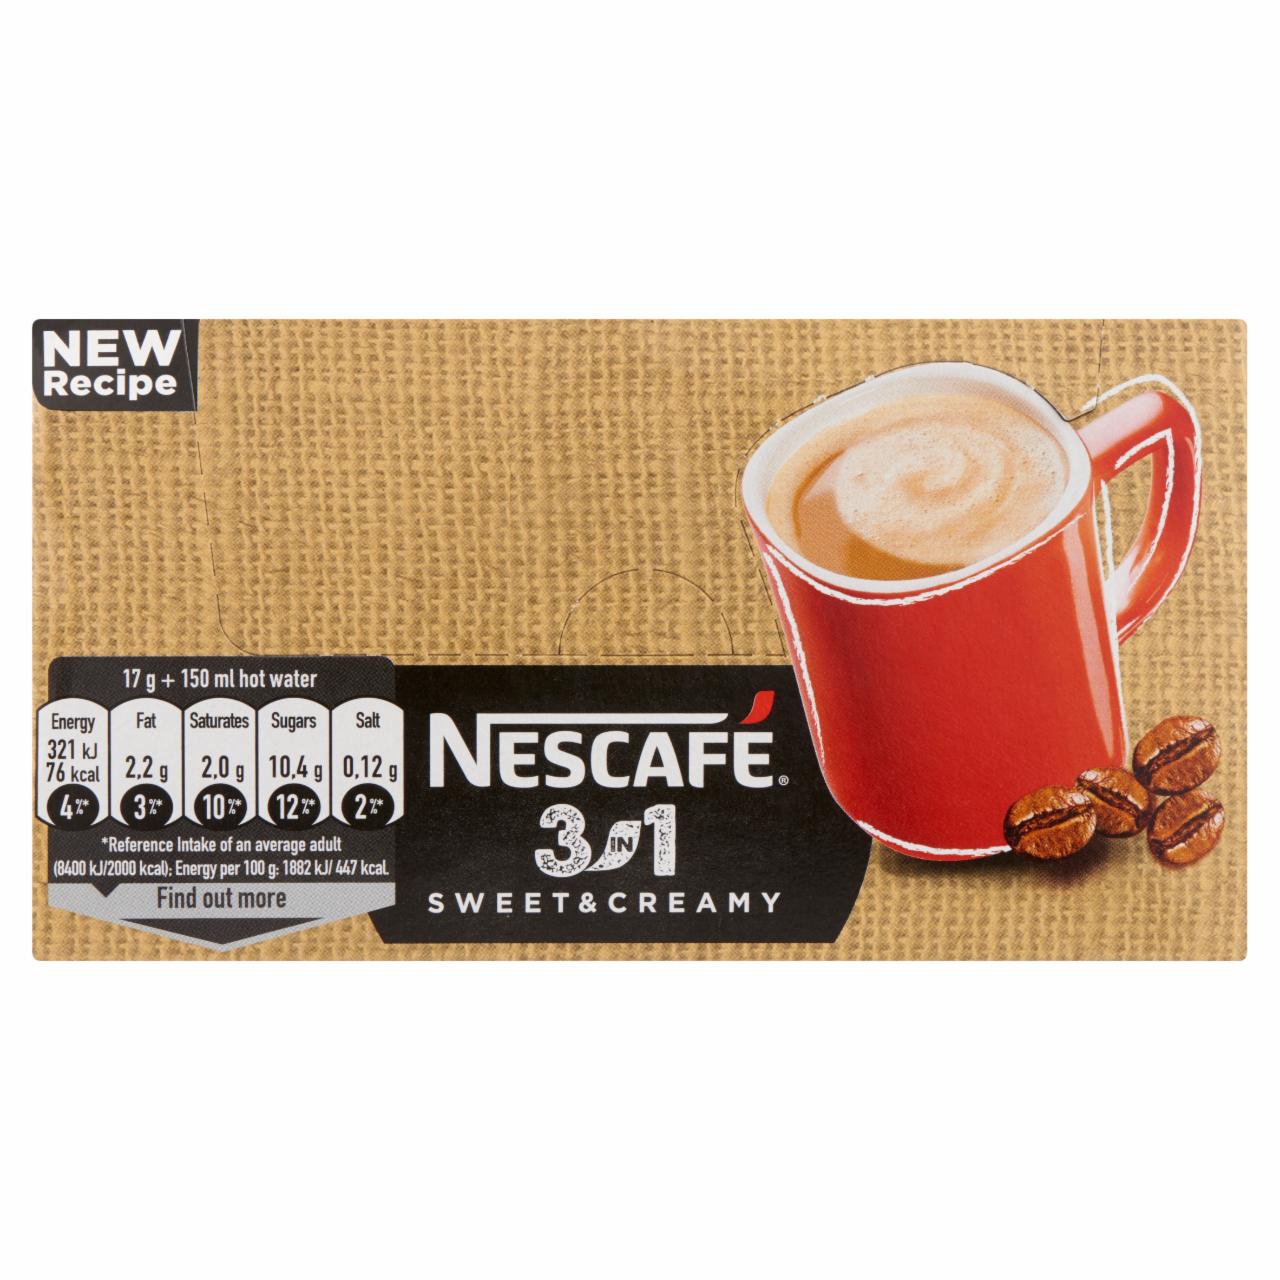 Képek - Nescafé 3in1 Sweet & Creamy azonnal oldódó kávéspecialitás 28 x 17 g (476 g)